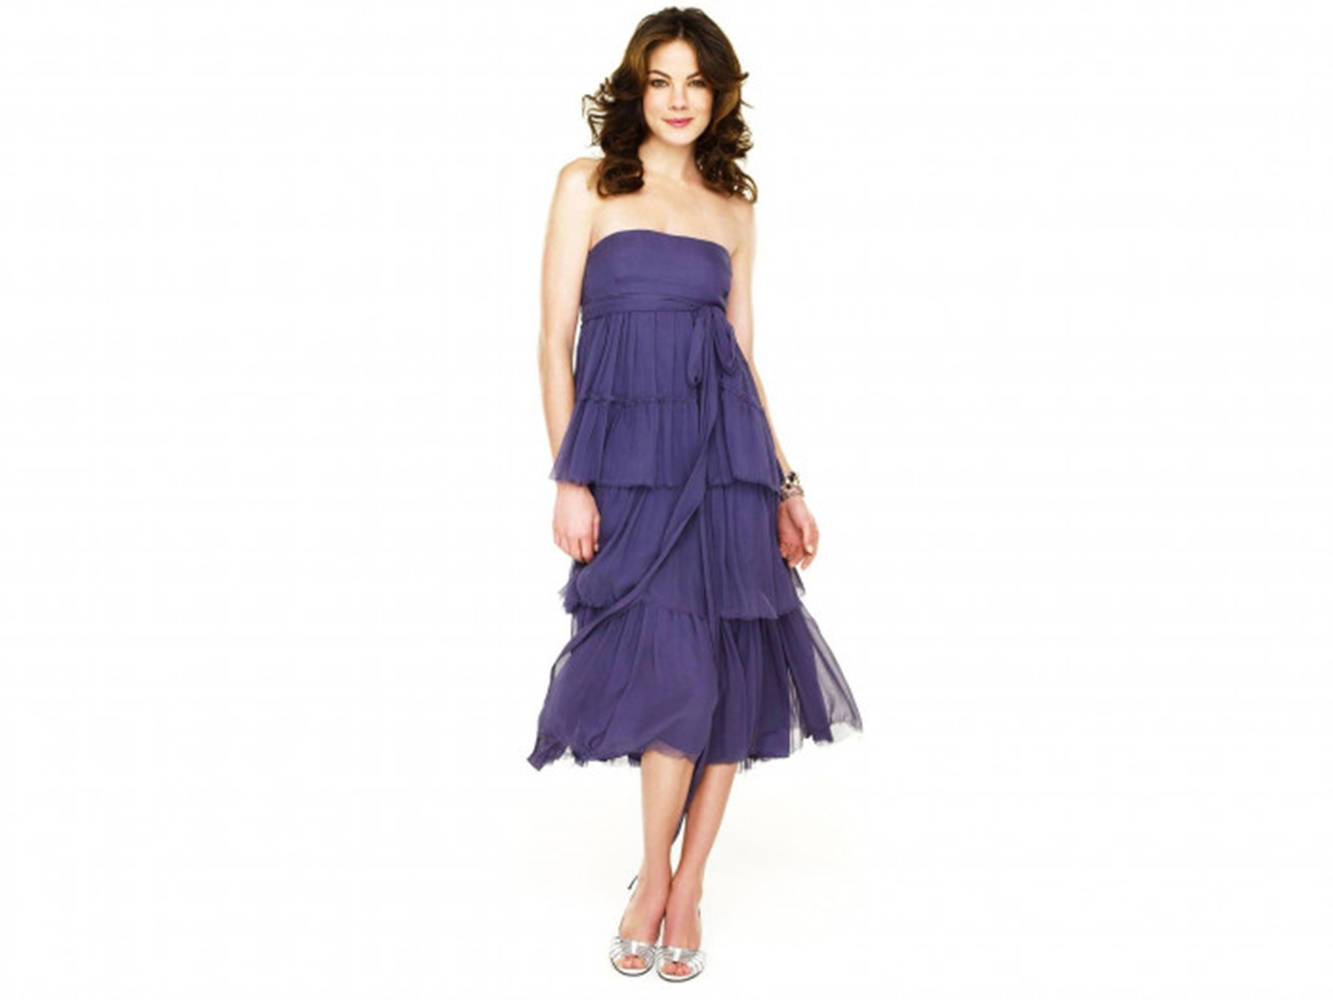 Michelle Monaghan Purple Flowing Dress Wallpaper